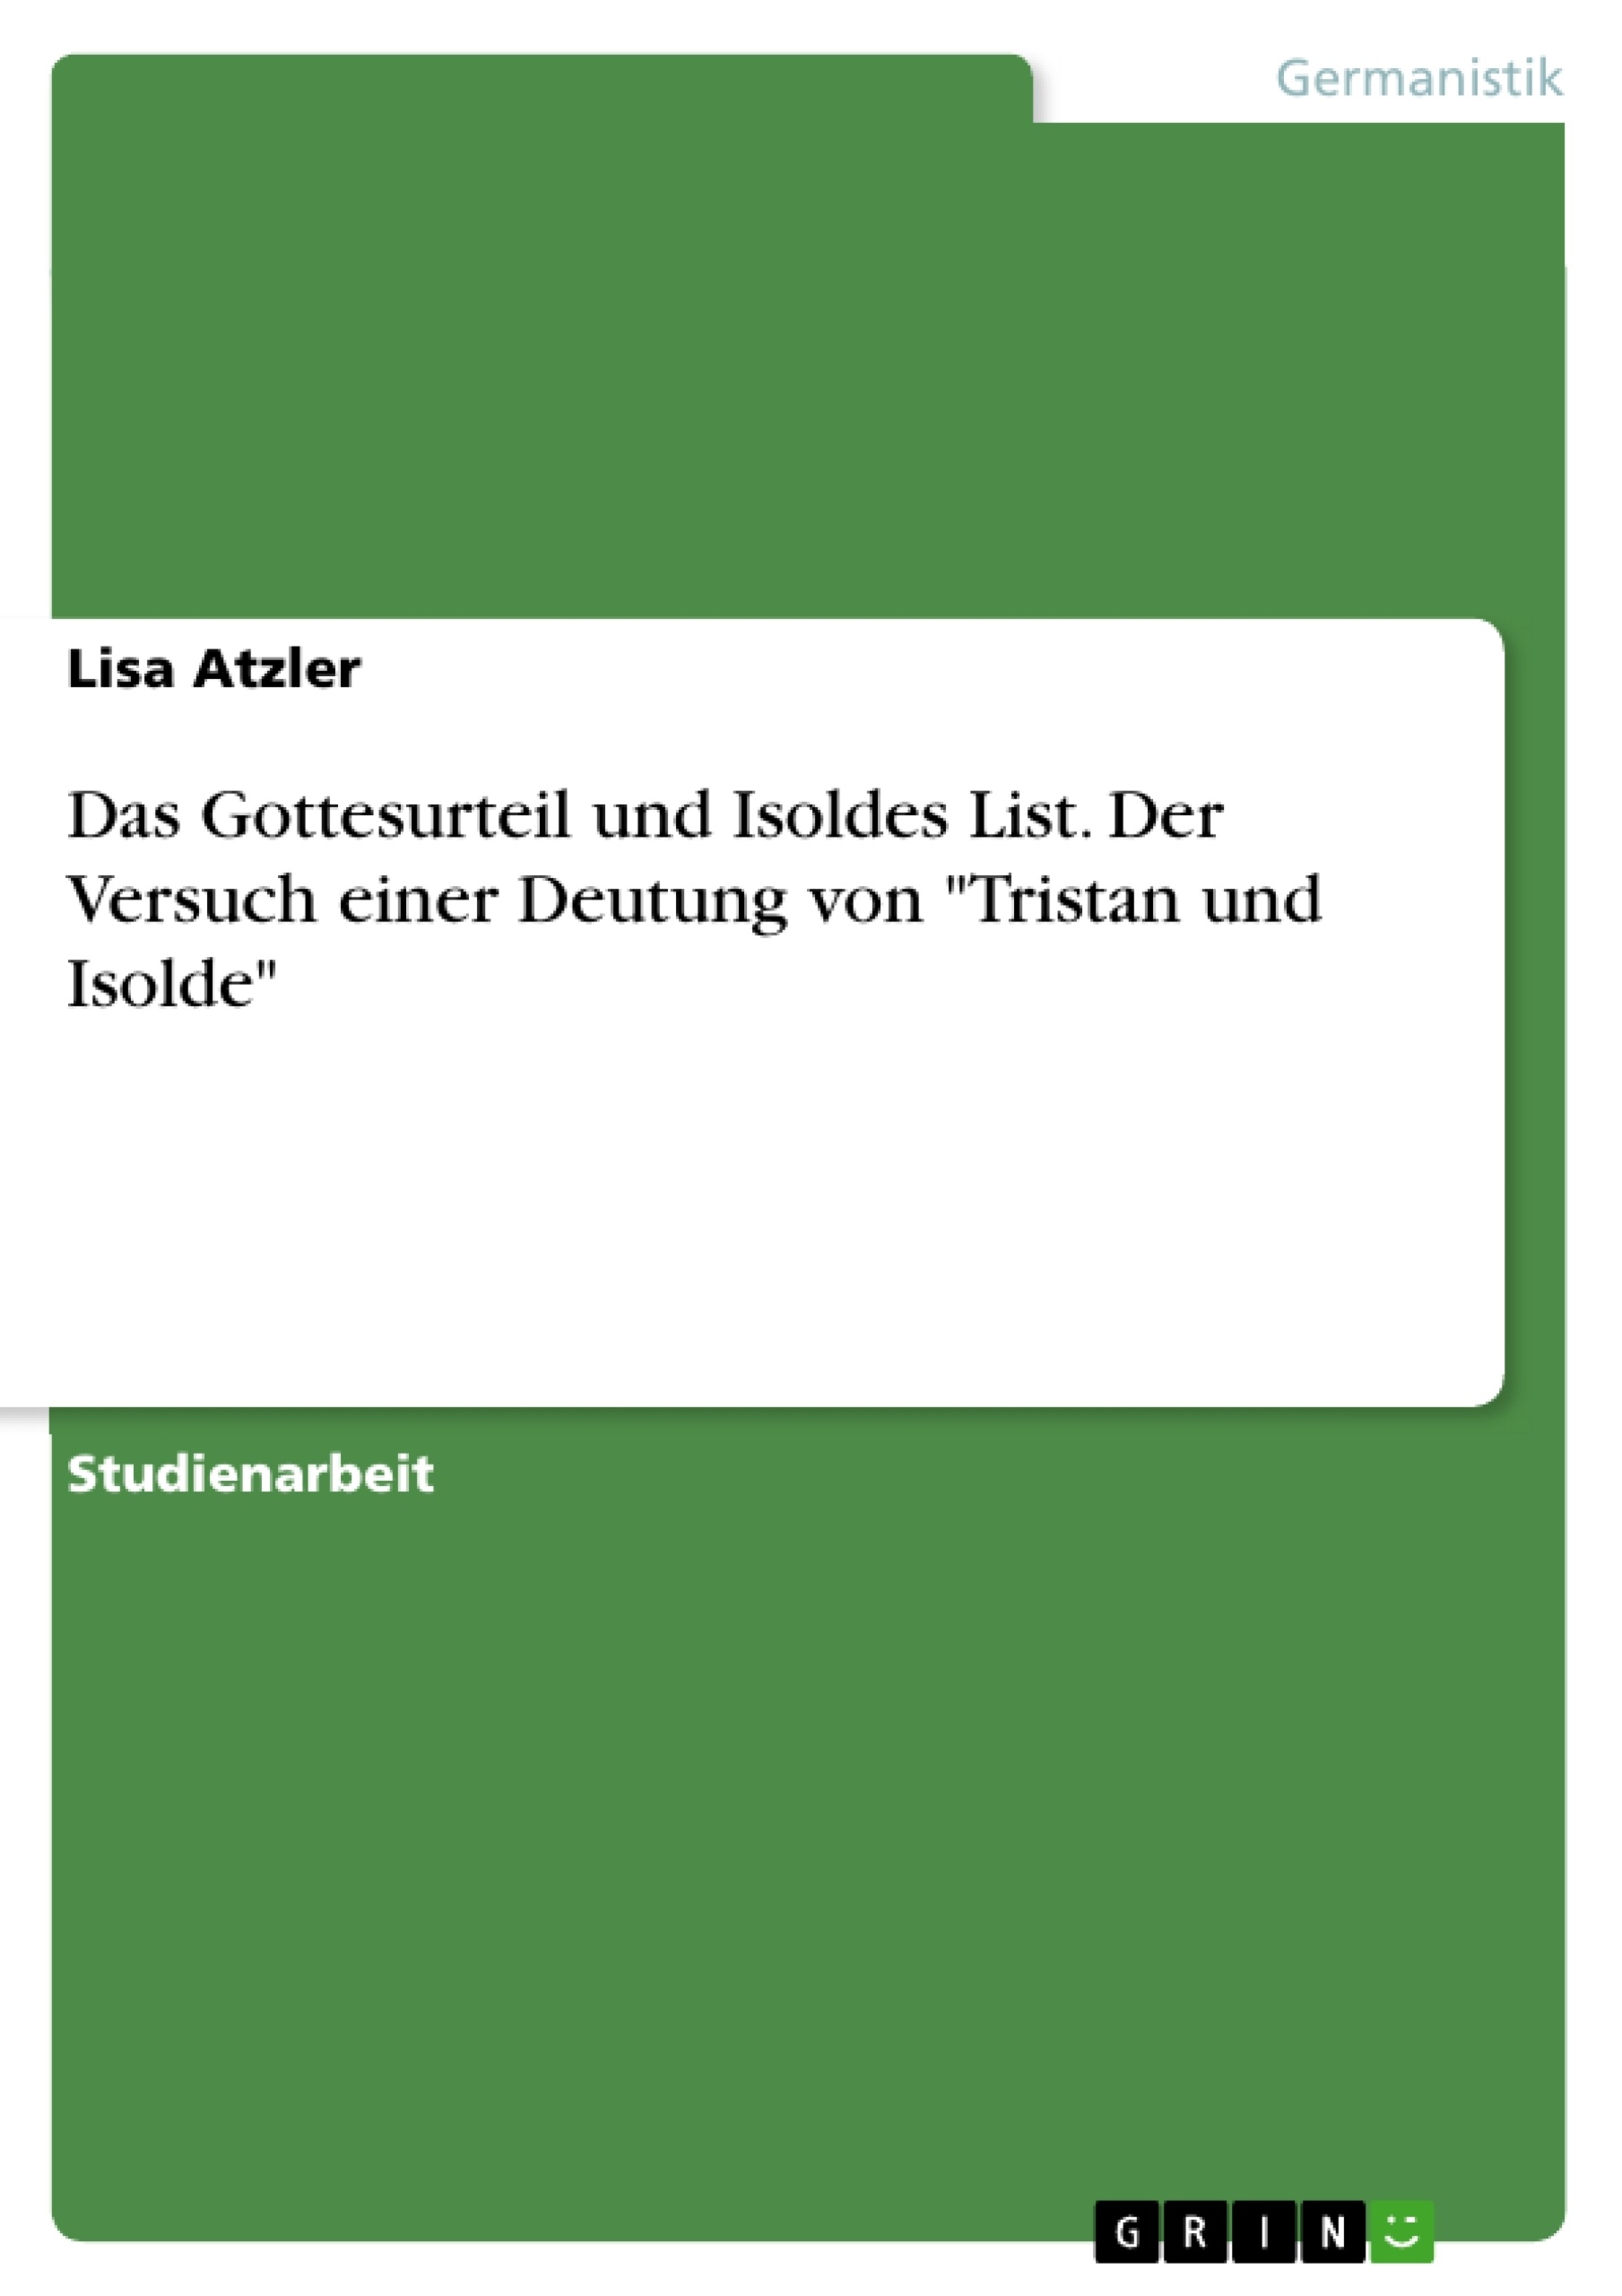 Título: Das Gottesurteil und Isoldes List. Der Versuch einer Deutung von "Tristan und Isolde"